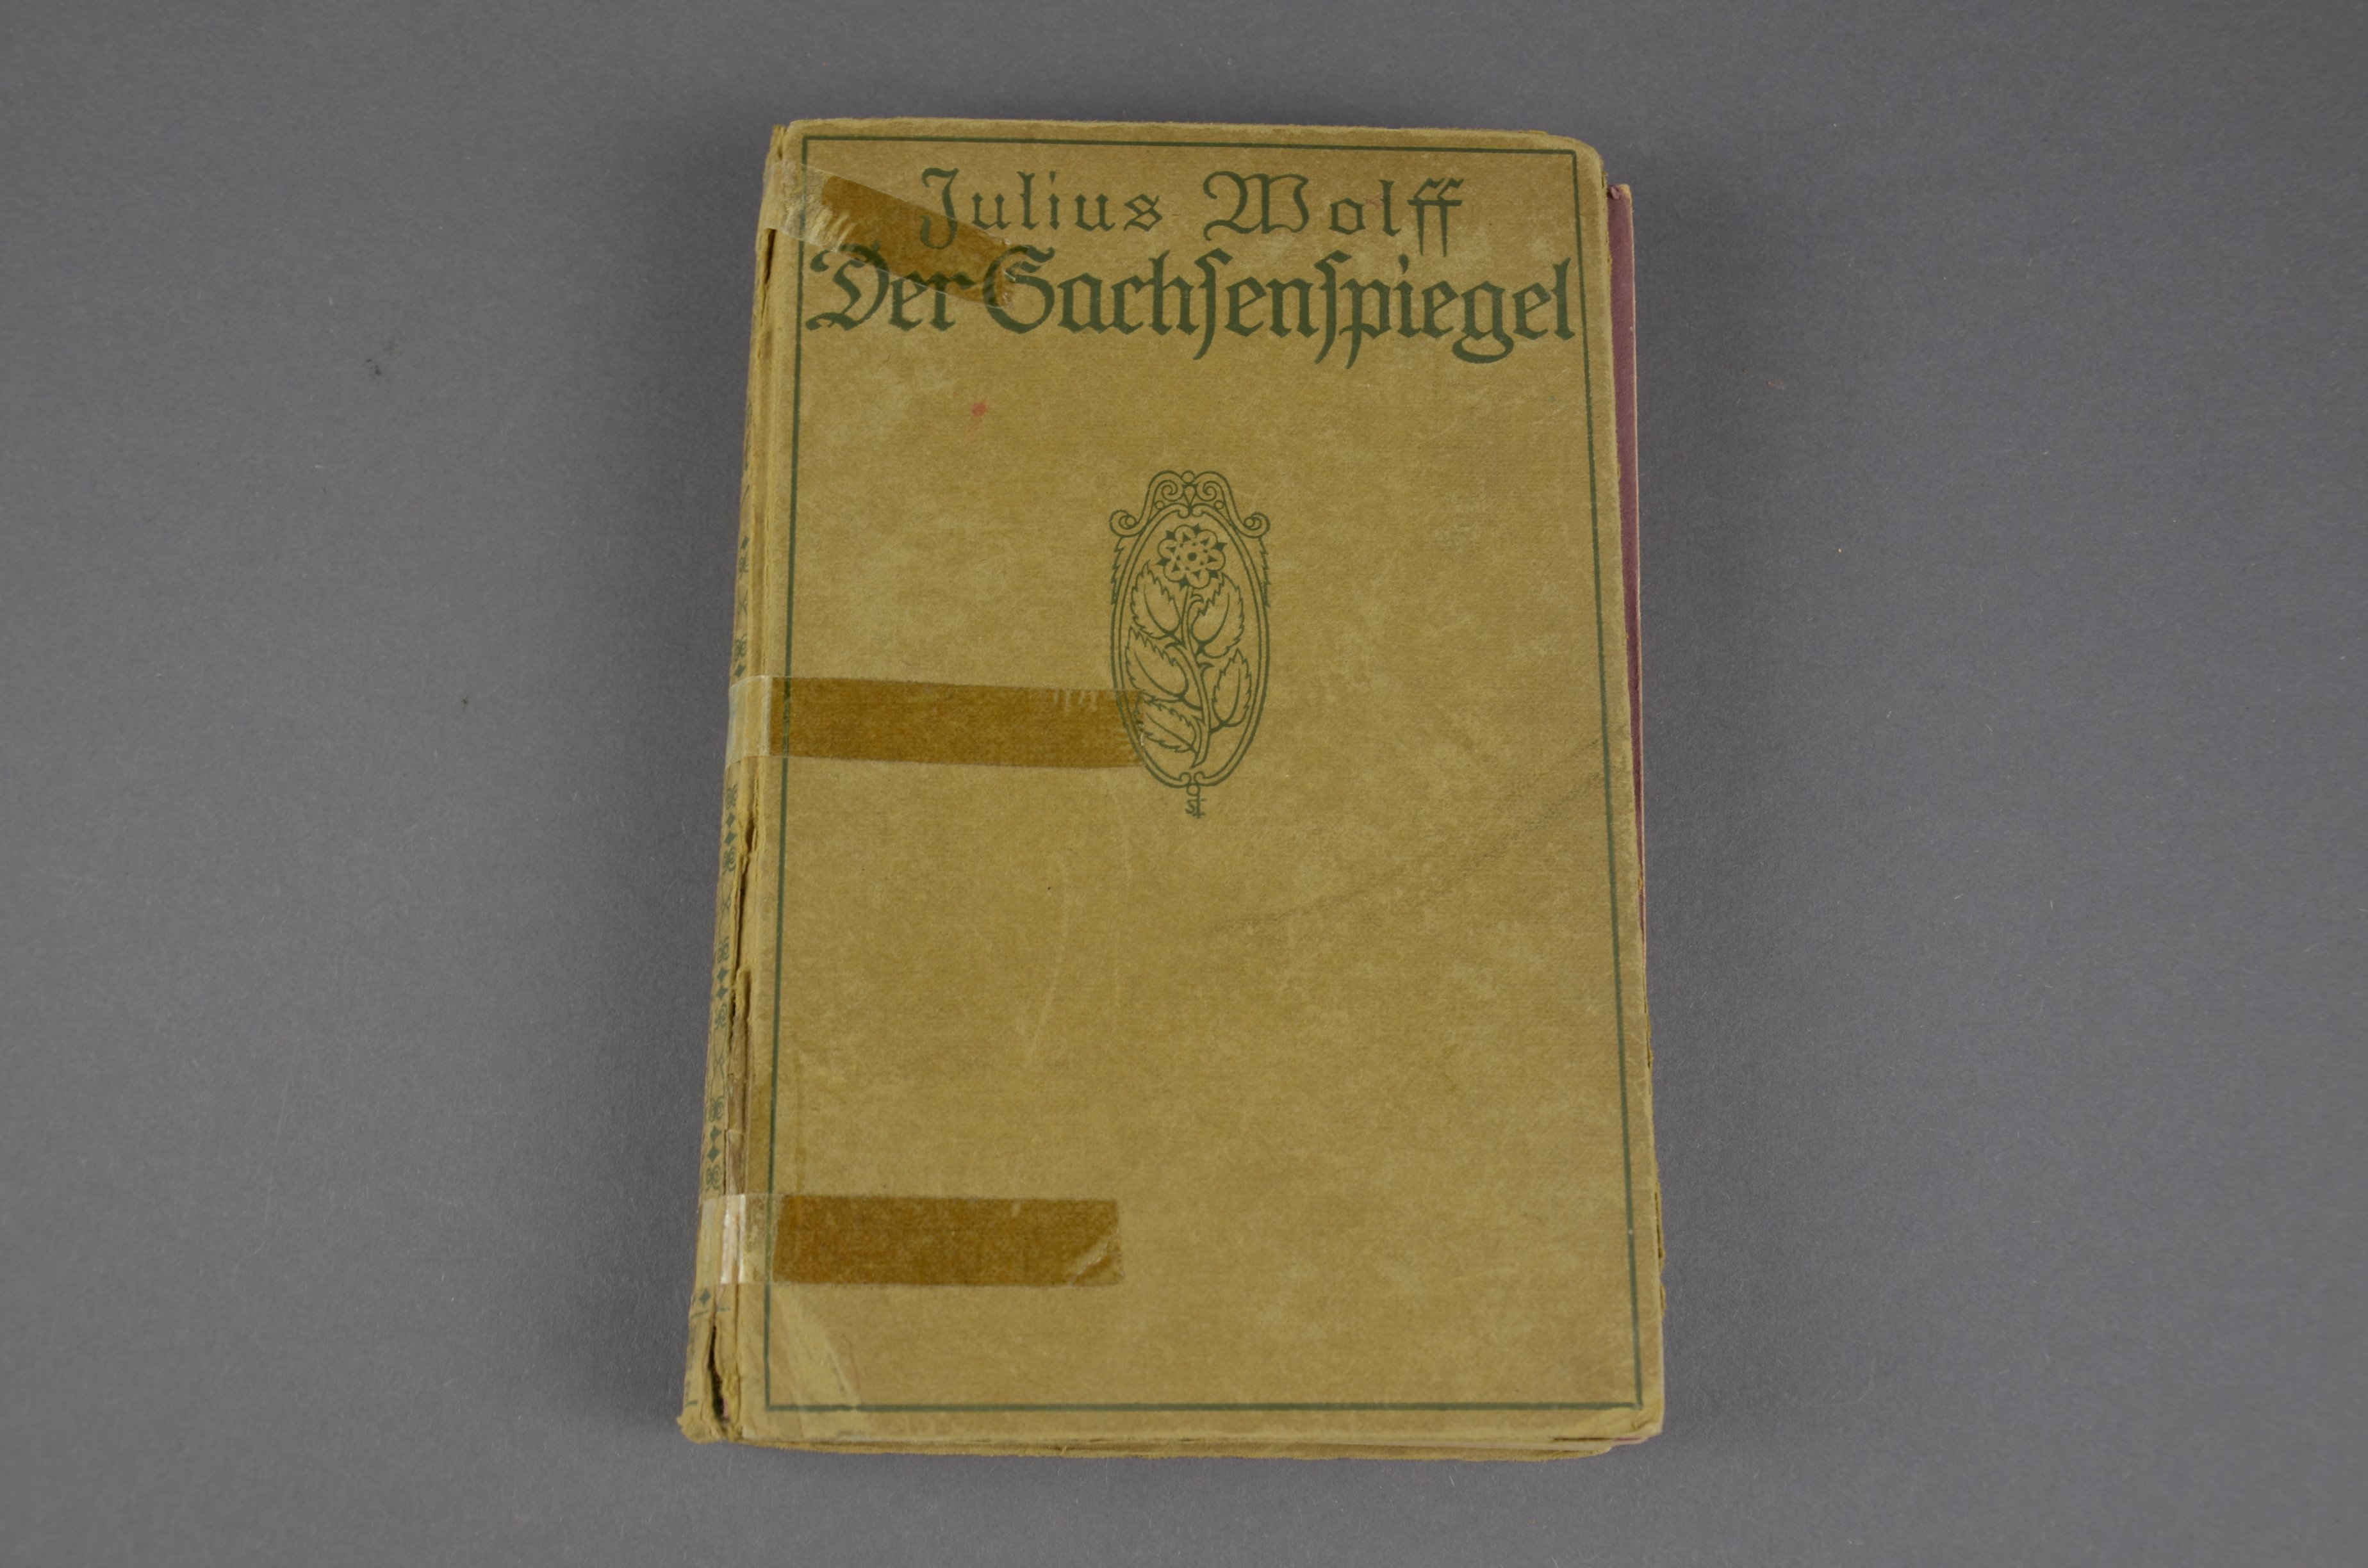 "Der Sachsenspiegel", Julius Wolf, "Eine Geschichte aus der Hohenstaufenzeit" (Förder- und Heimatverein Stadt und Kloster Jerichow e.V. CC BY-NC-SA)